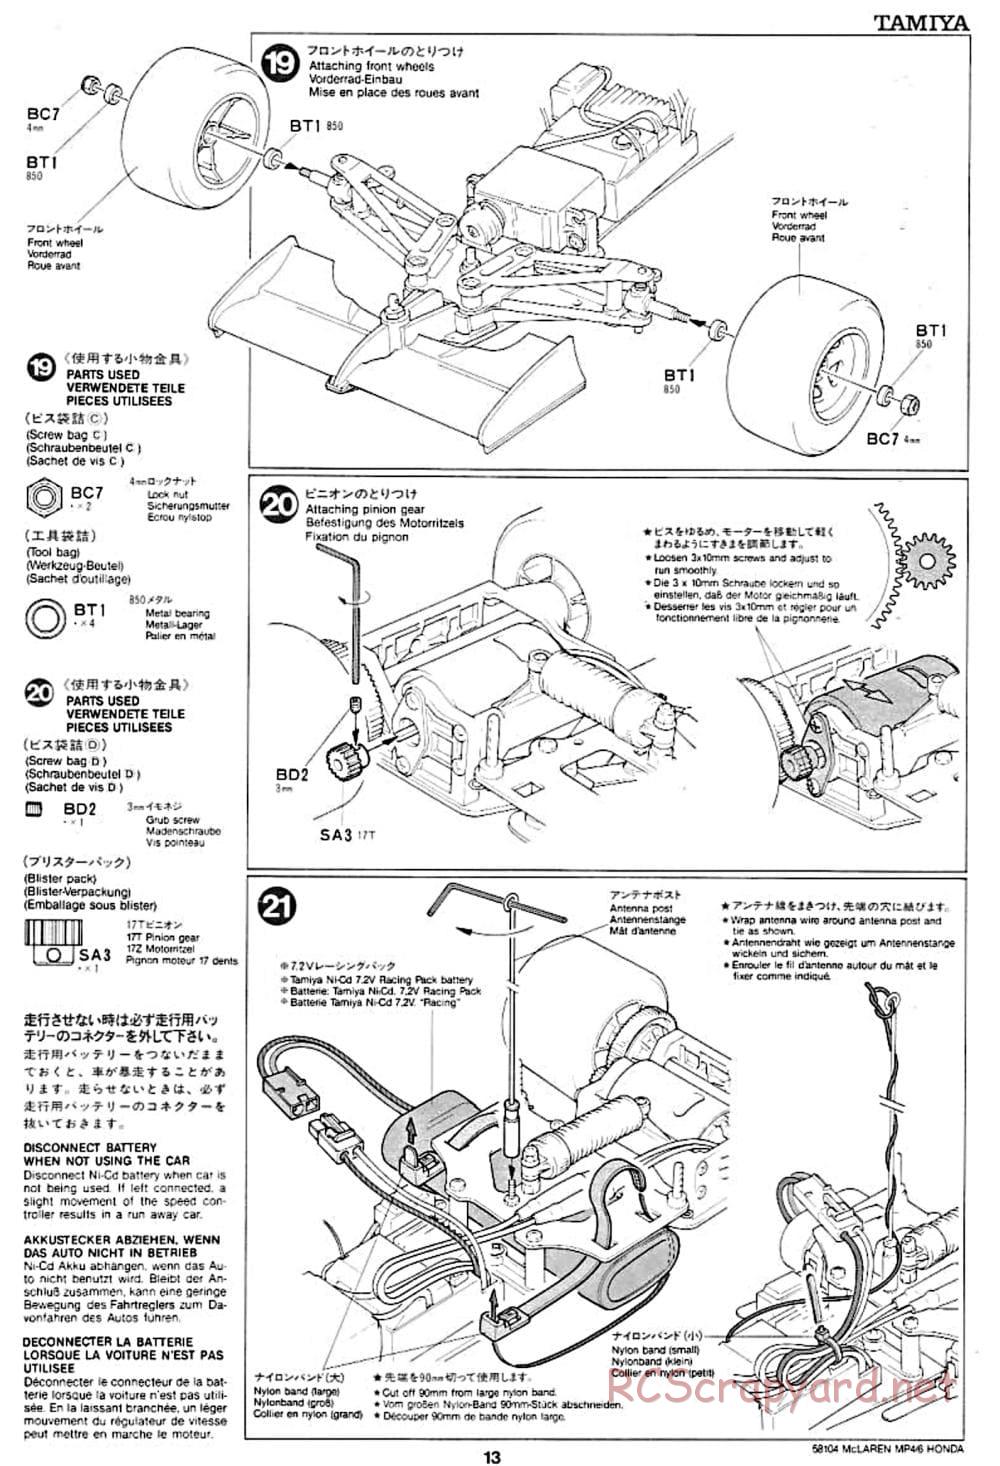 Tamiya - McLaren MP4/6 Honda - F102 Chassis - Manual - Page 13